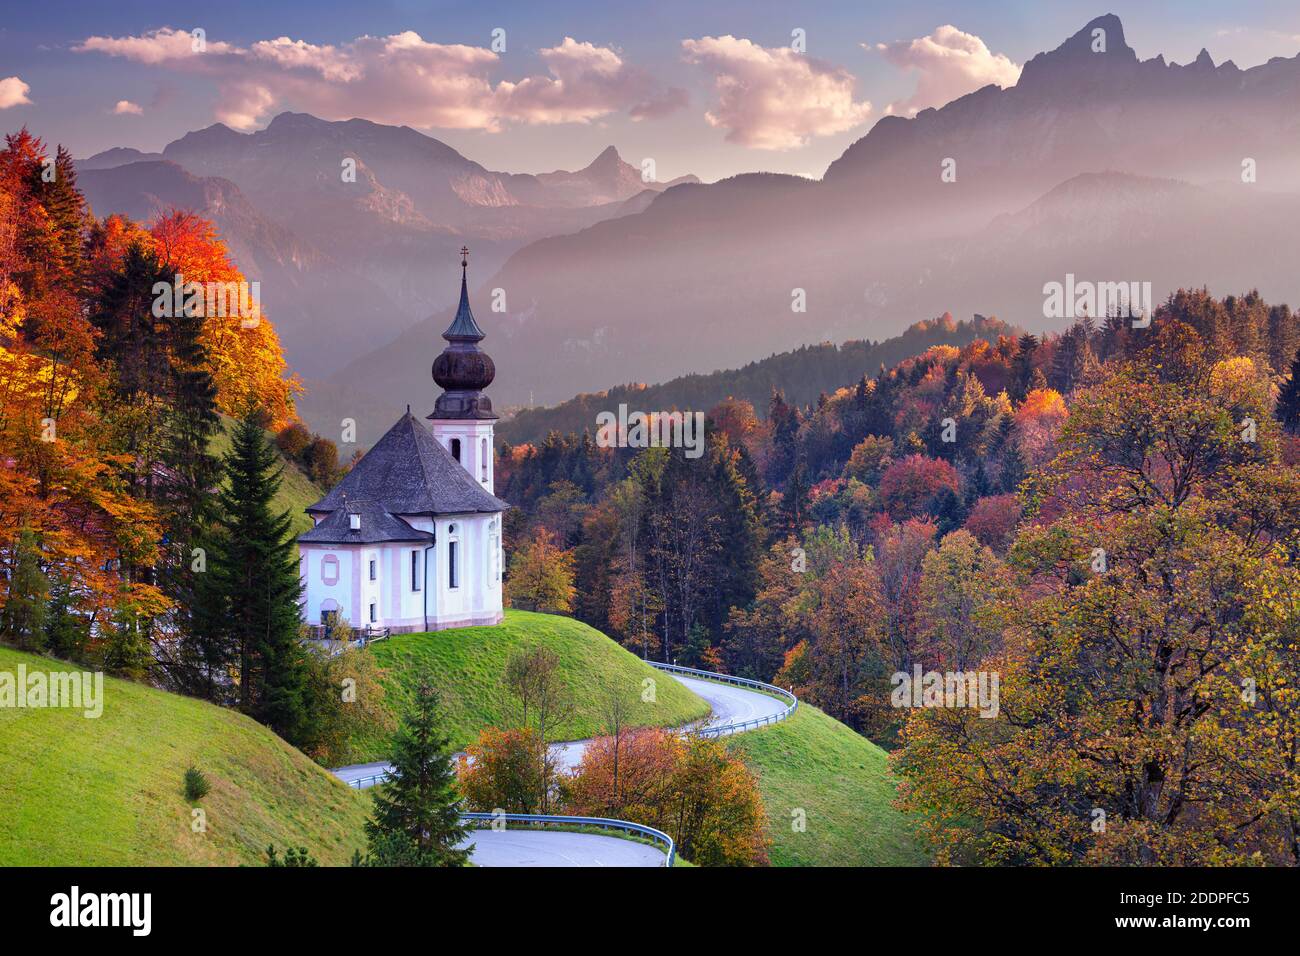 Alpes bávaros. Paisaje imagen de los Alpes bávaros con la Iglesia de María Gern y la montaña Watzmann durante la hermosa puesta de sol de otoño. Foto de stock